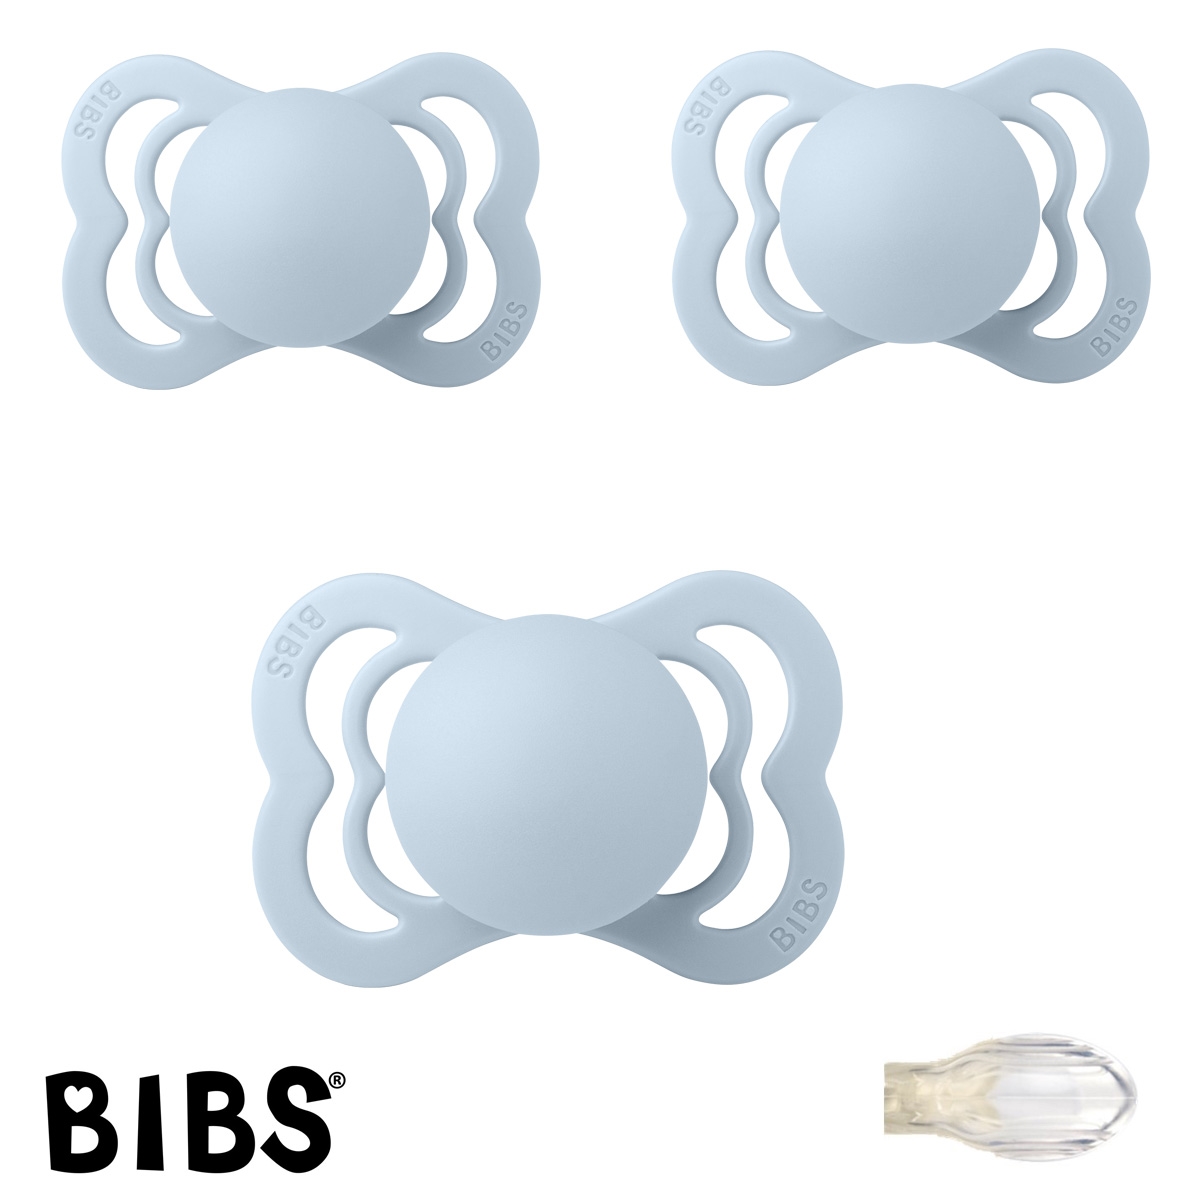 BIBS Supreme Sutter med navn, 3 Baby Blue, Symmetrisk Silikone str.1 Pakke med 3 sutter